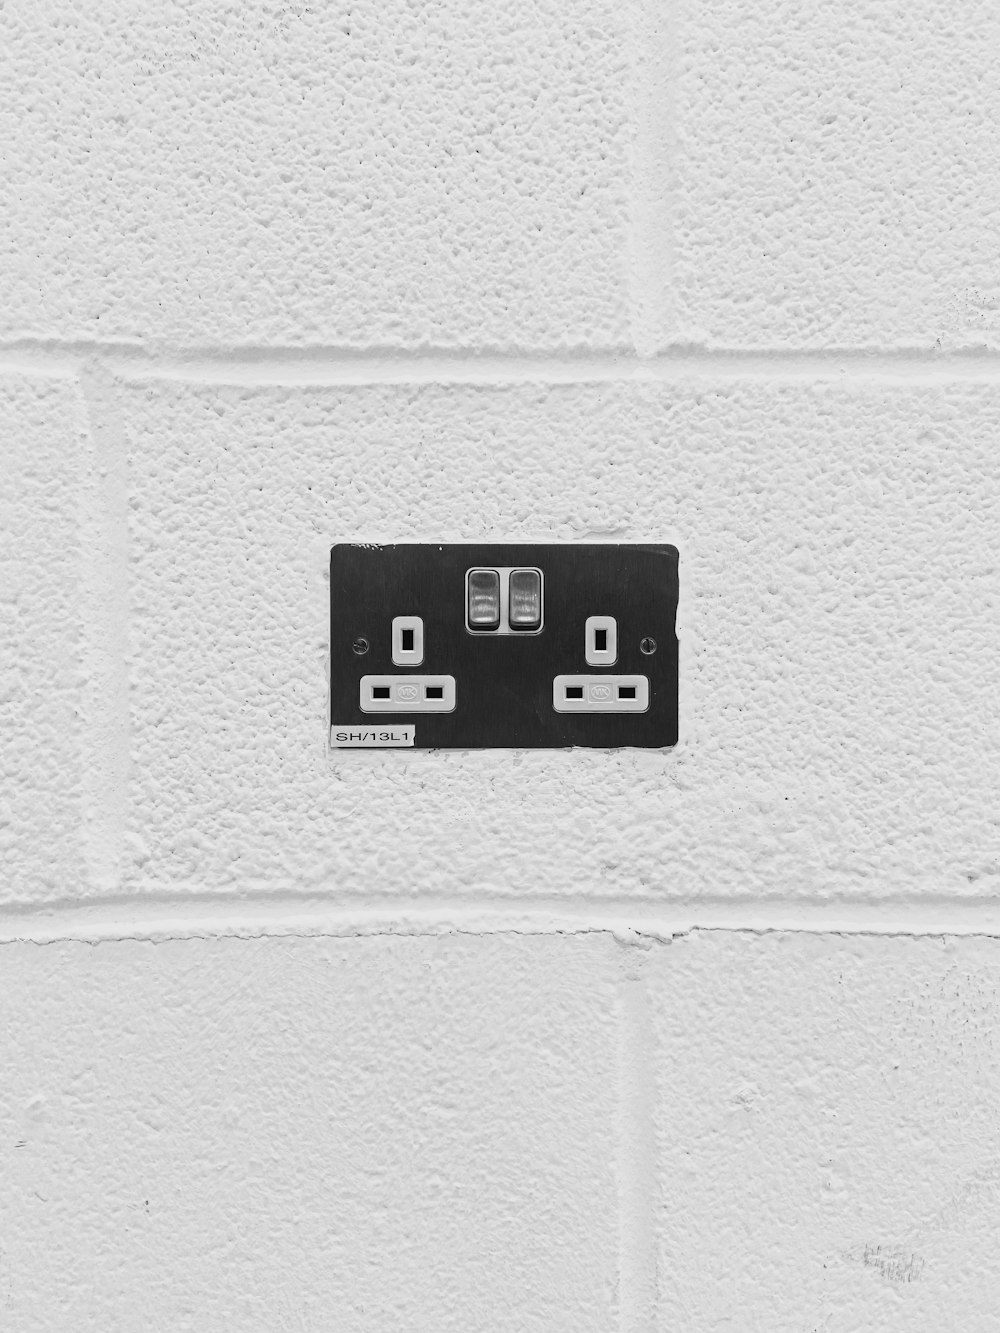 Interruptor de pared en blanco y negro